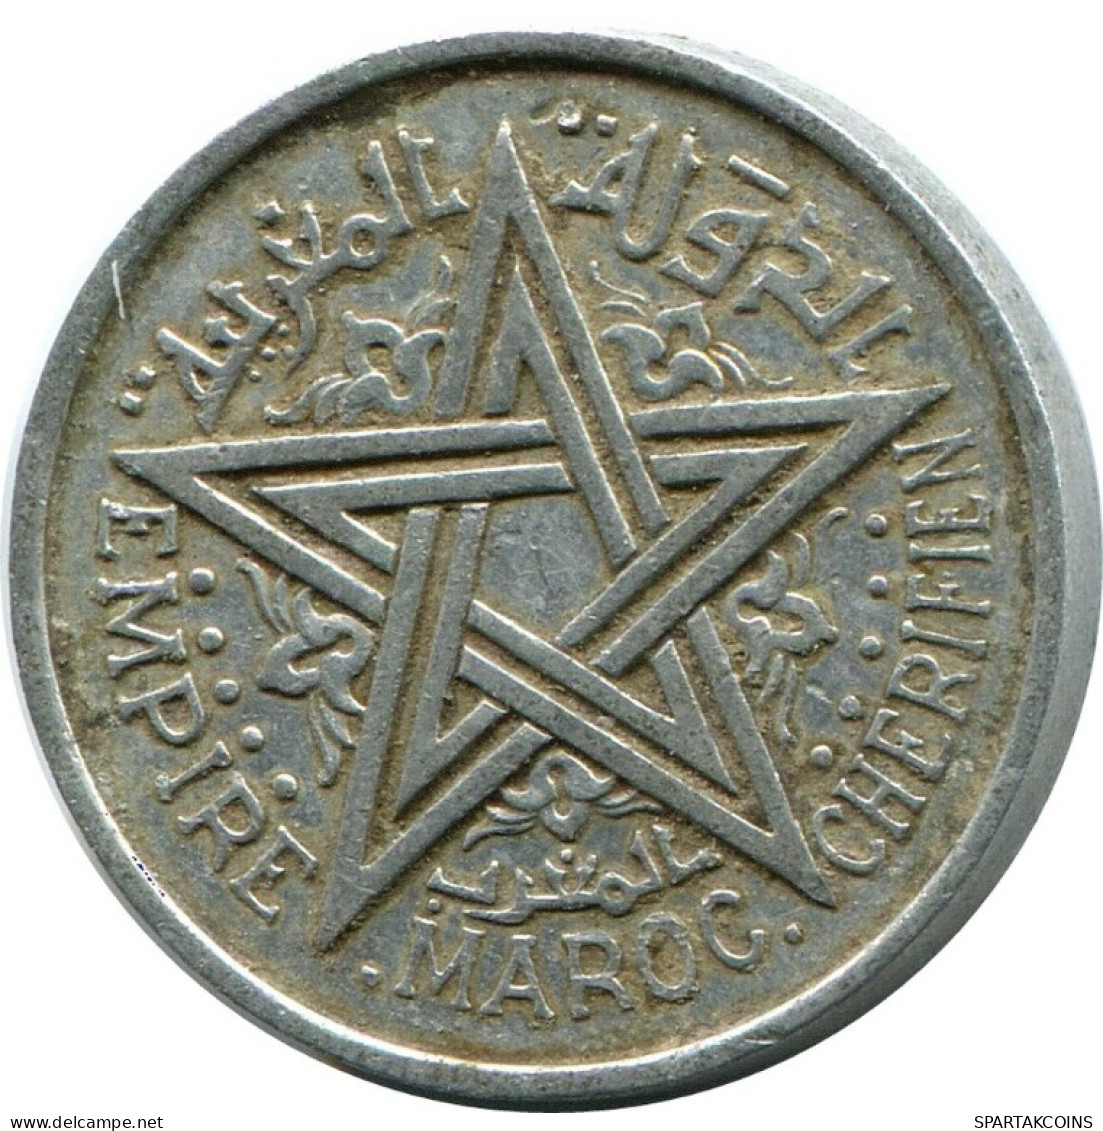 1 FRANC 1951 MOROCCO Islamic Coin #AH691.3.U.A - Marocco